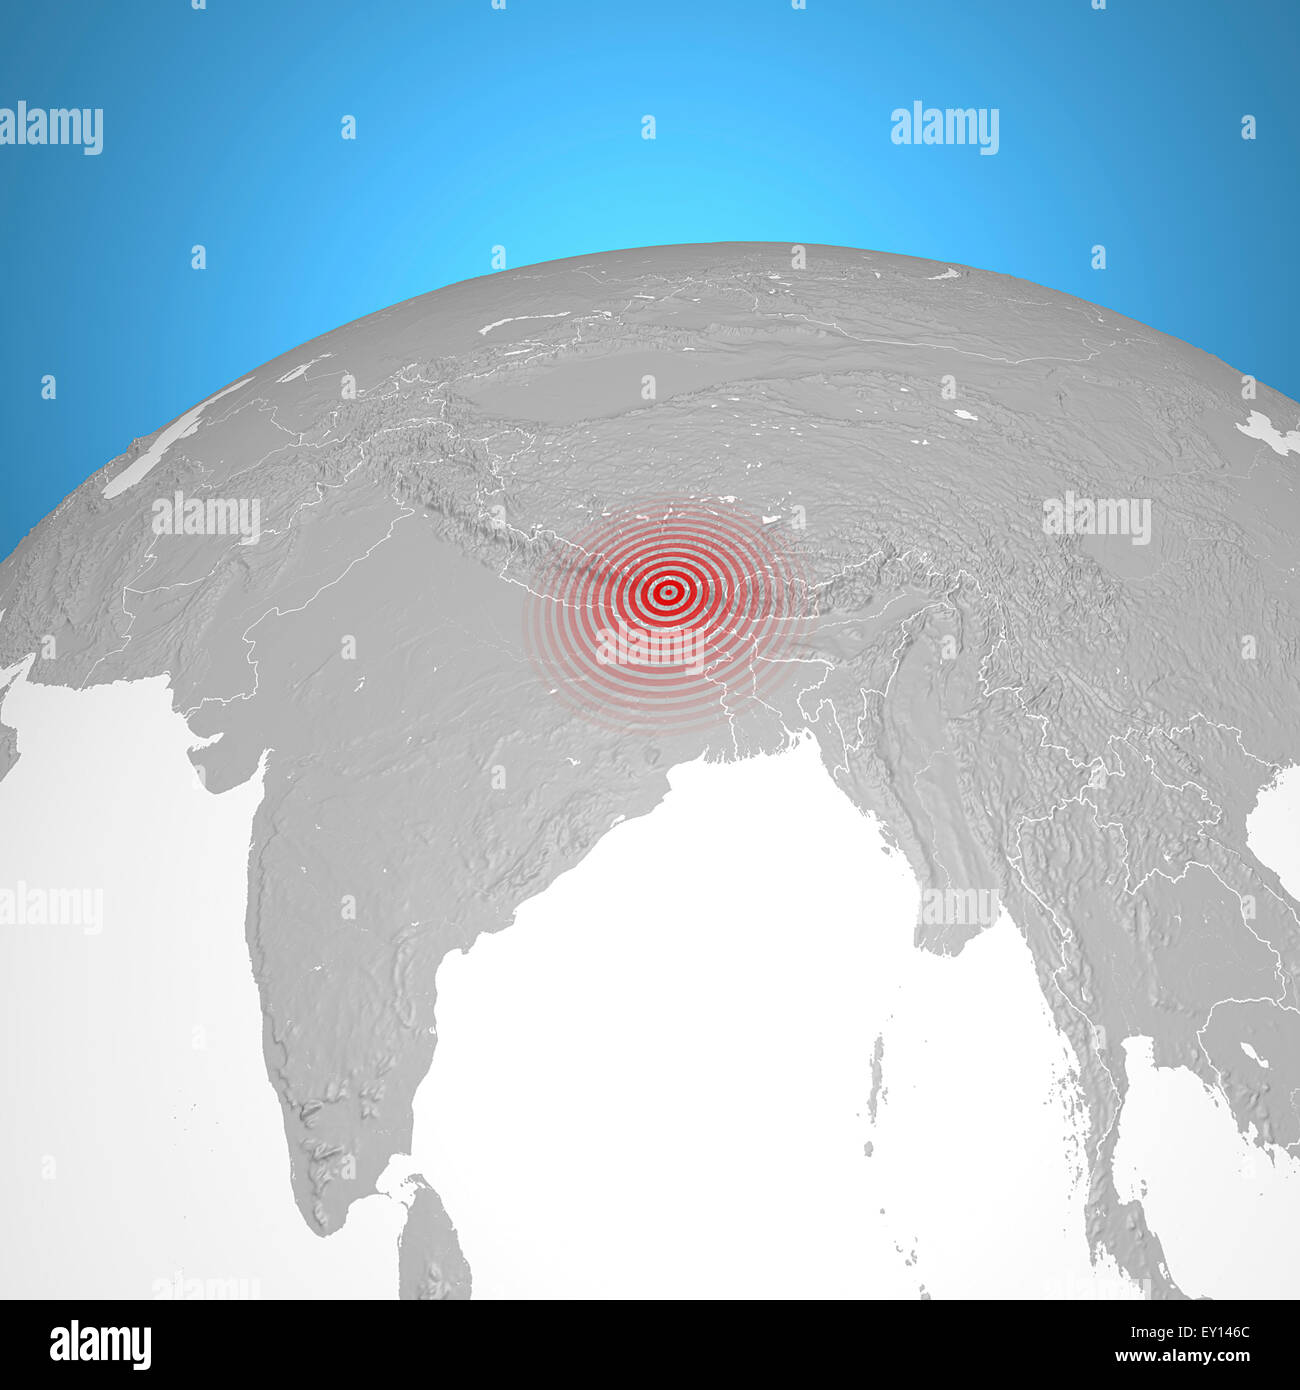 World globe avec séisme au Népal signe rouge sur fond bleu Banque D'Images